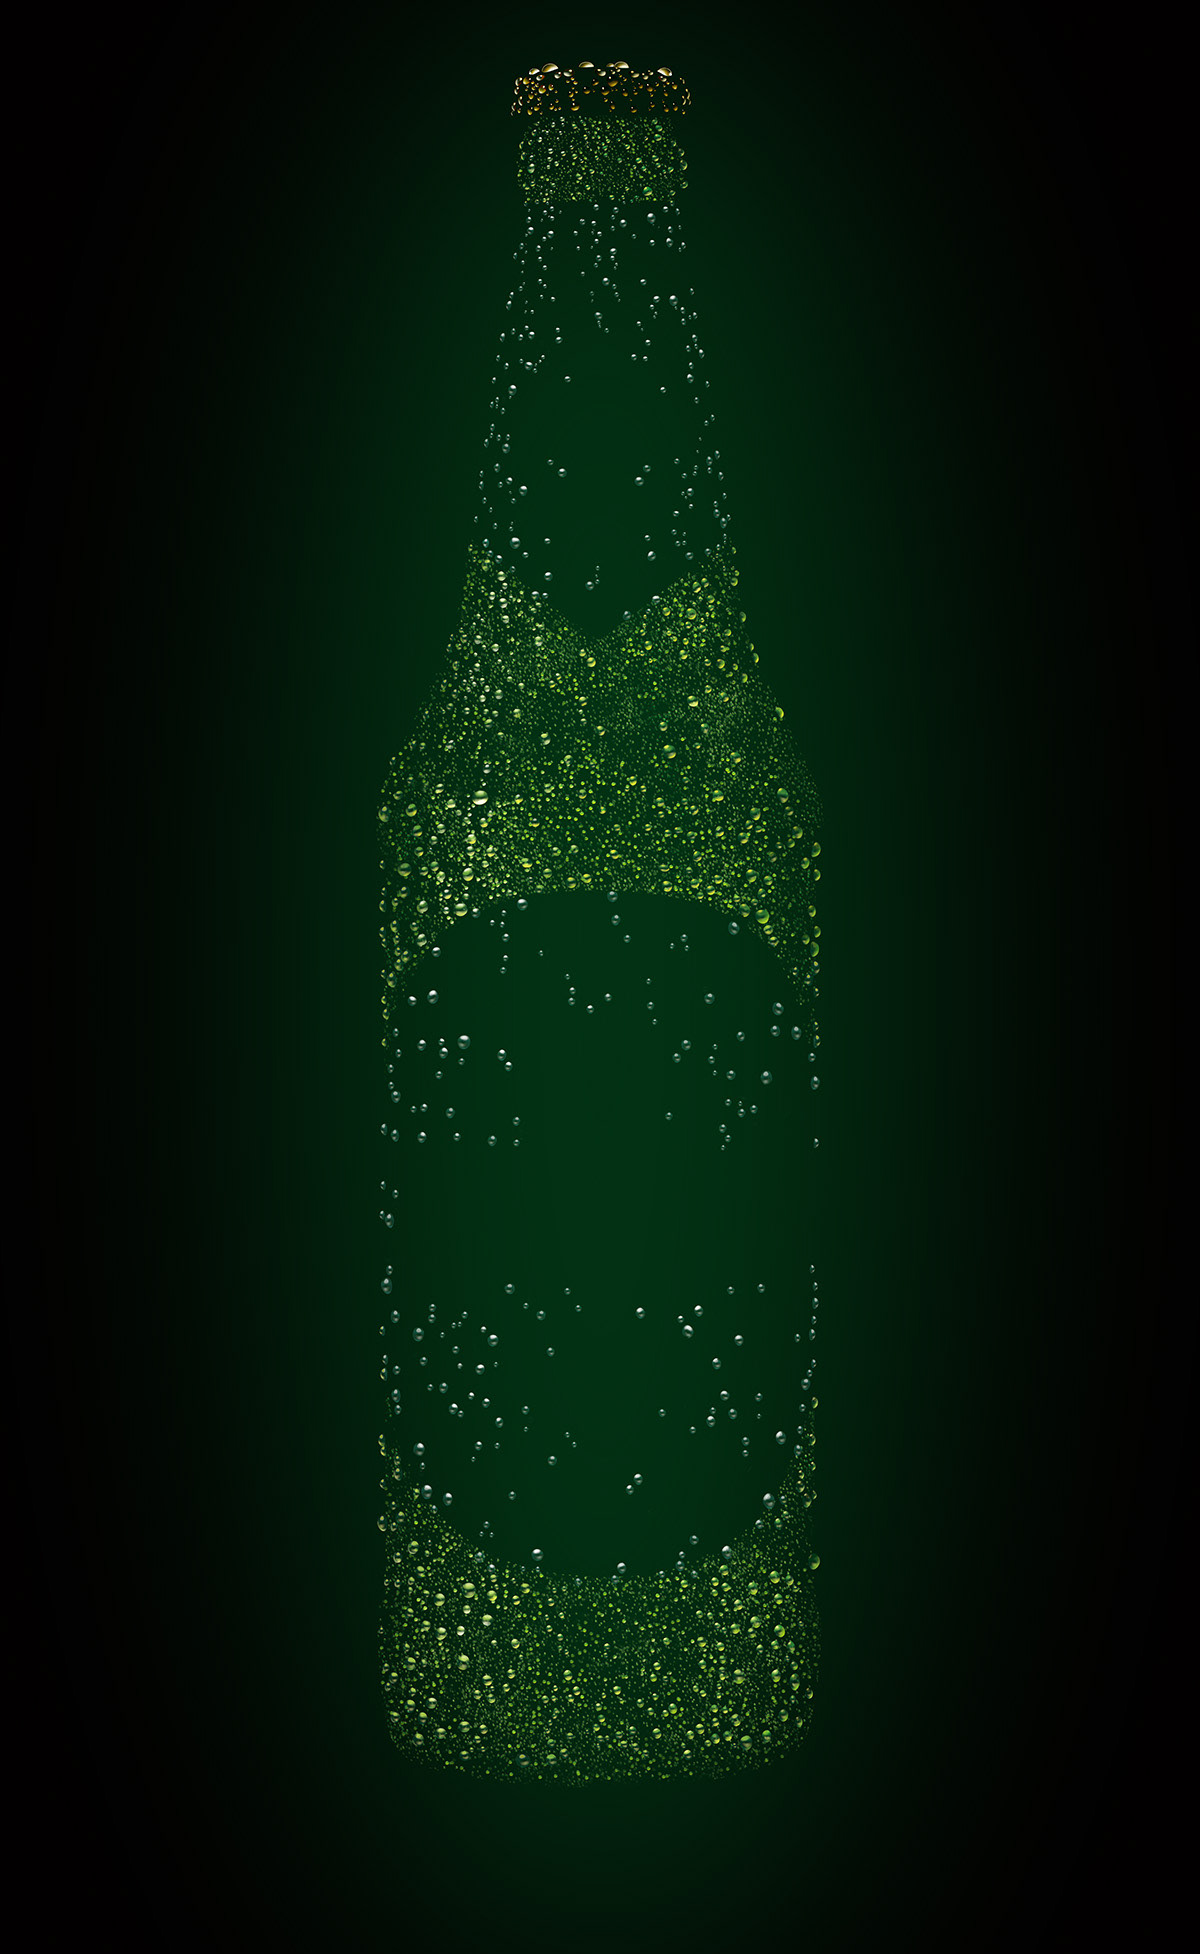 barley beer beverage bottle branding  condensation drink glass labels lager